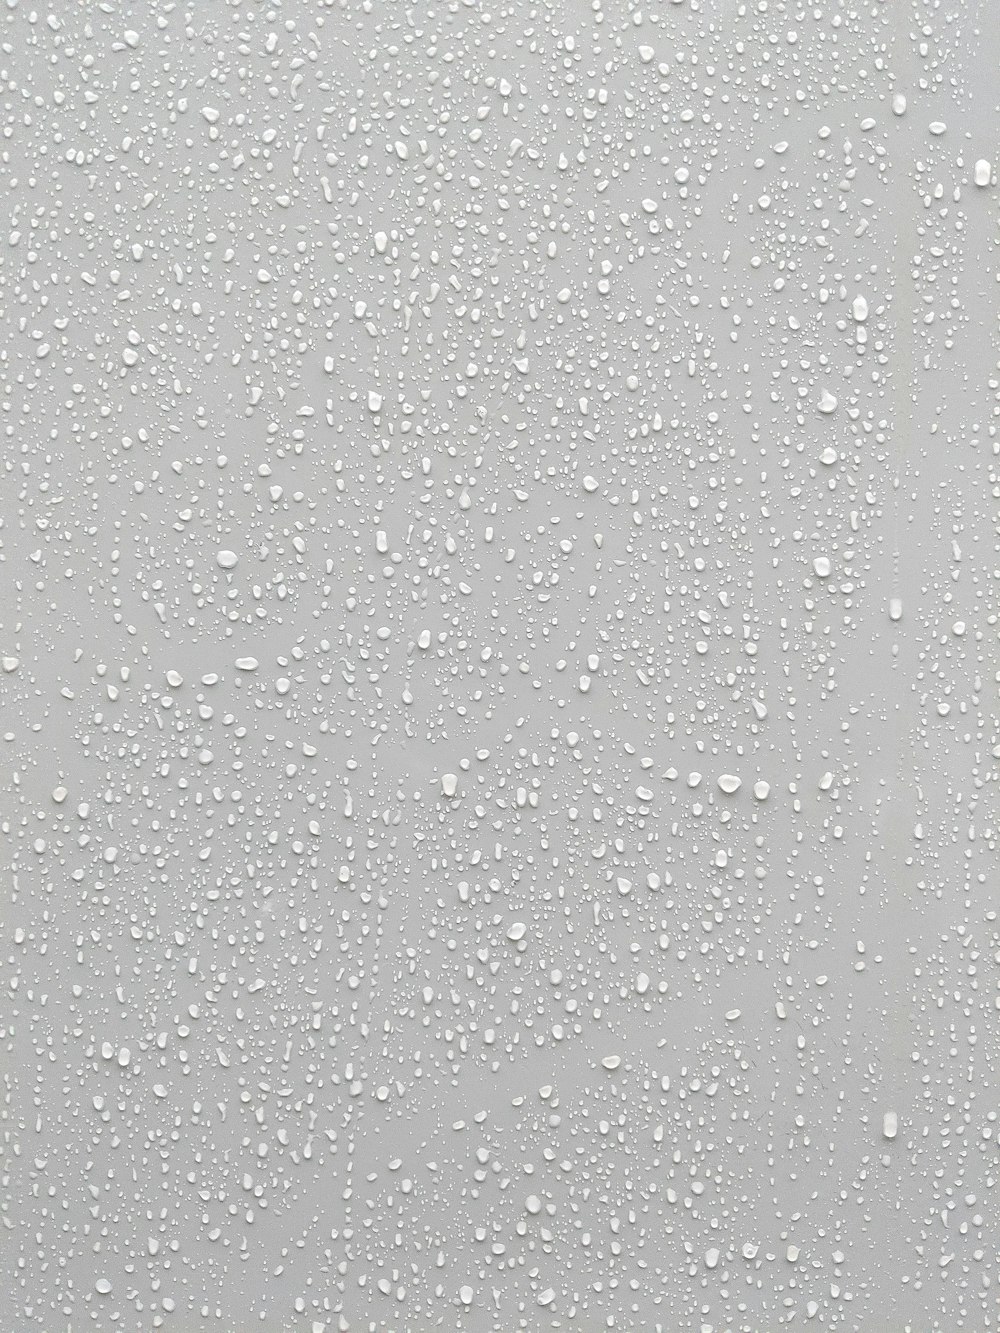 gotas de água em uma superfície de vidro com um fundo branco